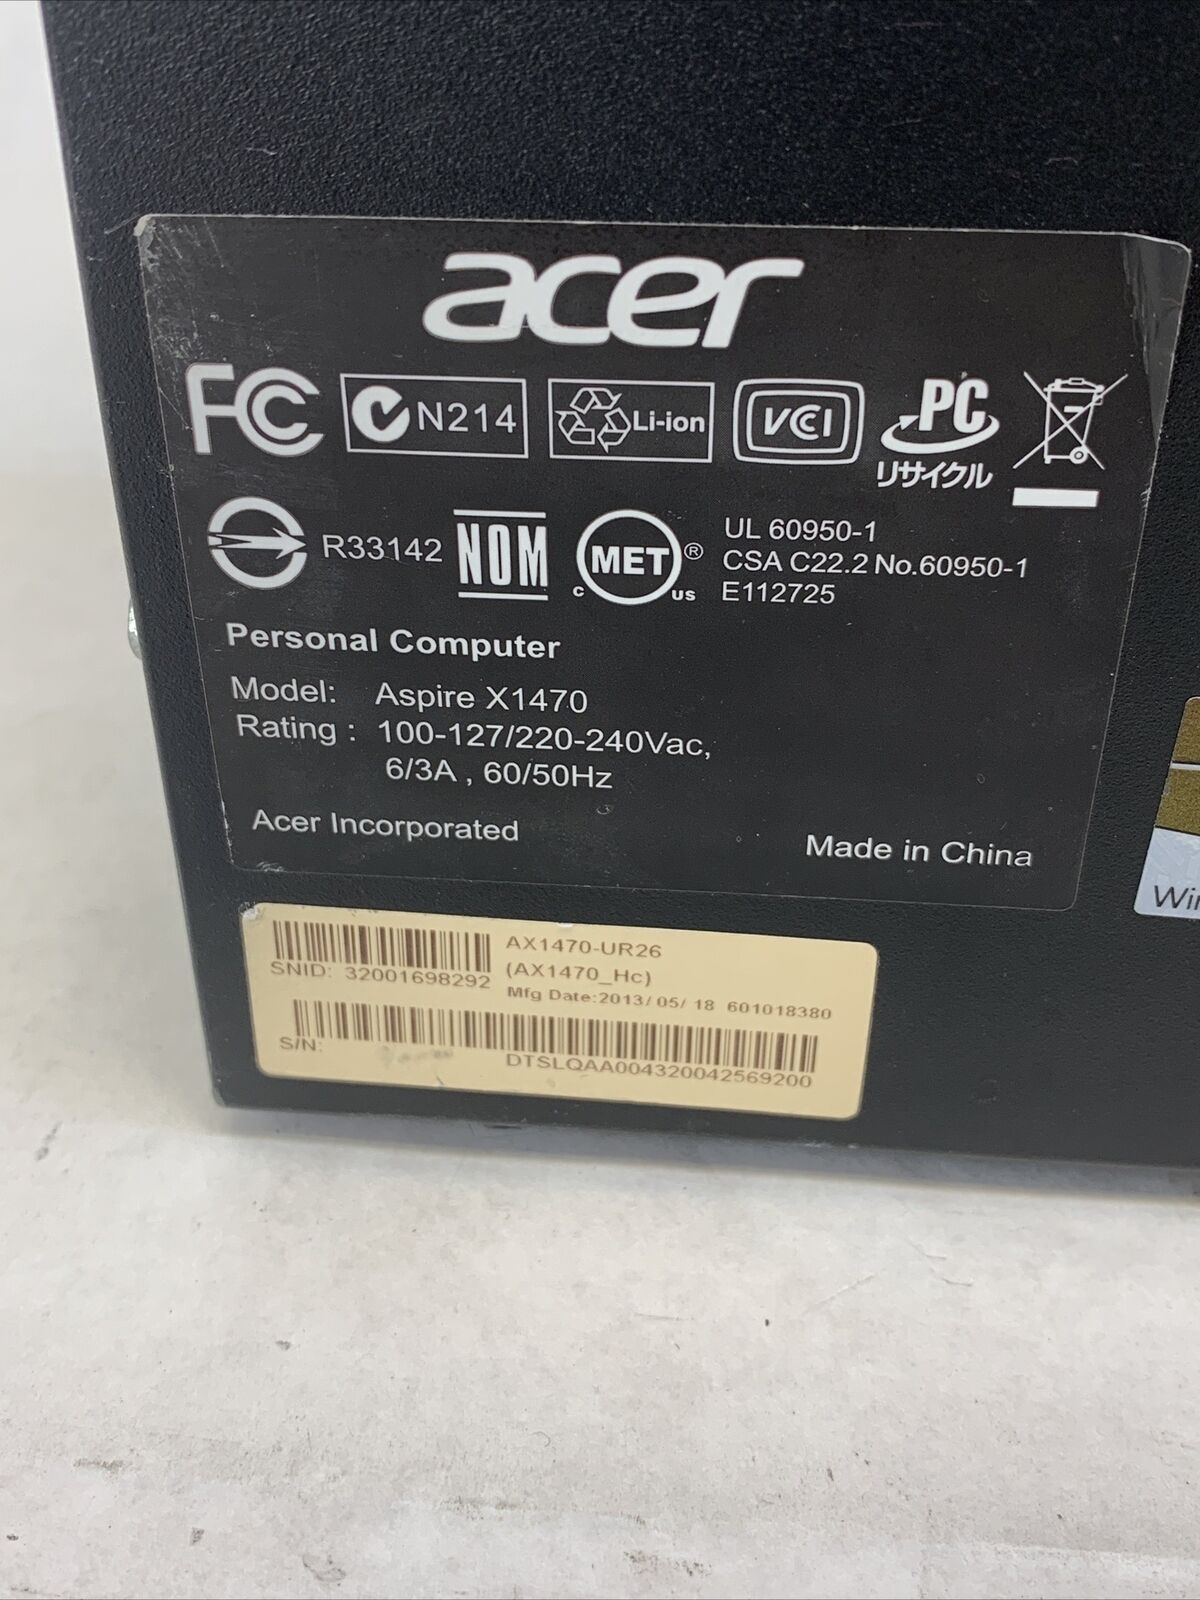 Acer Aspire X1470 SFF AMD A6-3620 2.2GHz 4GB RAM No HDD No OS